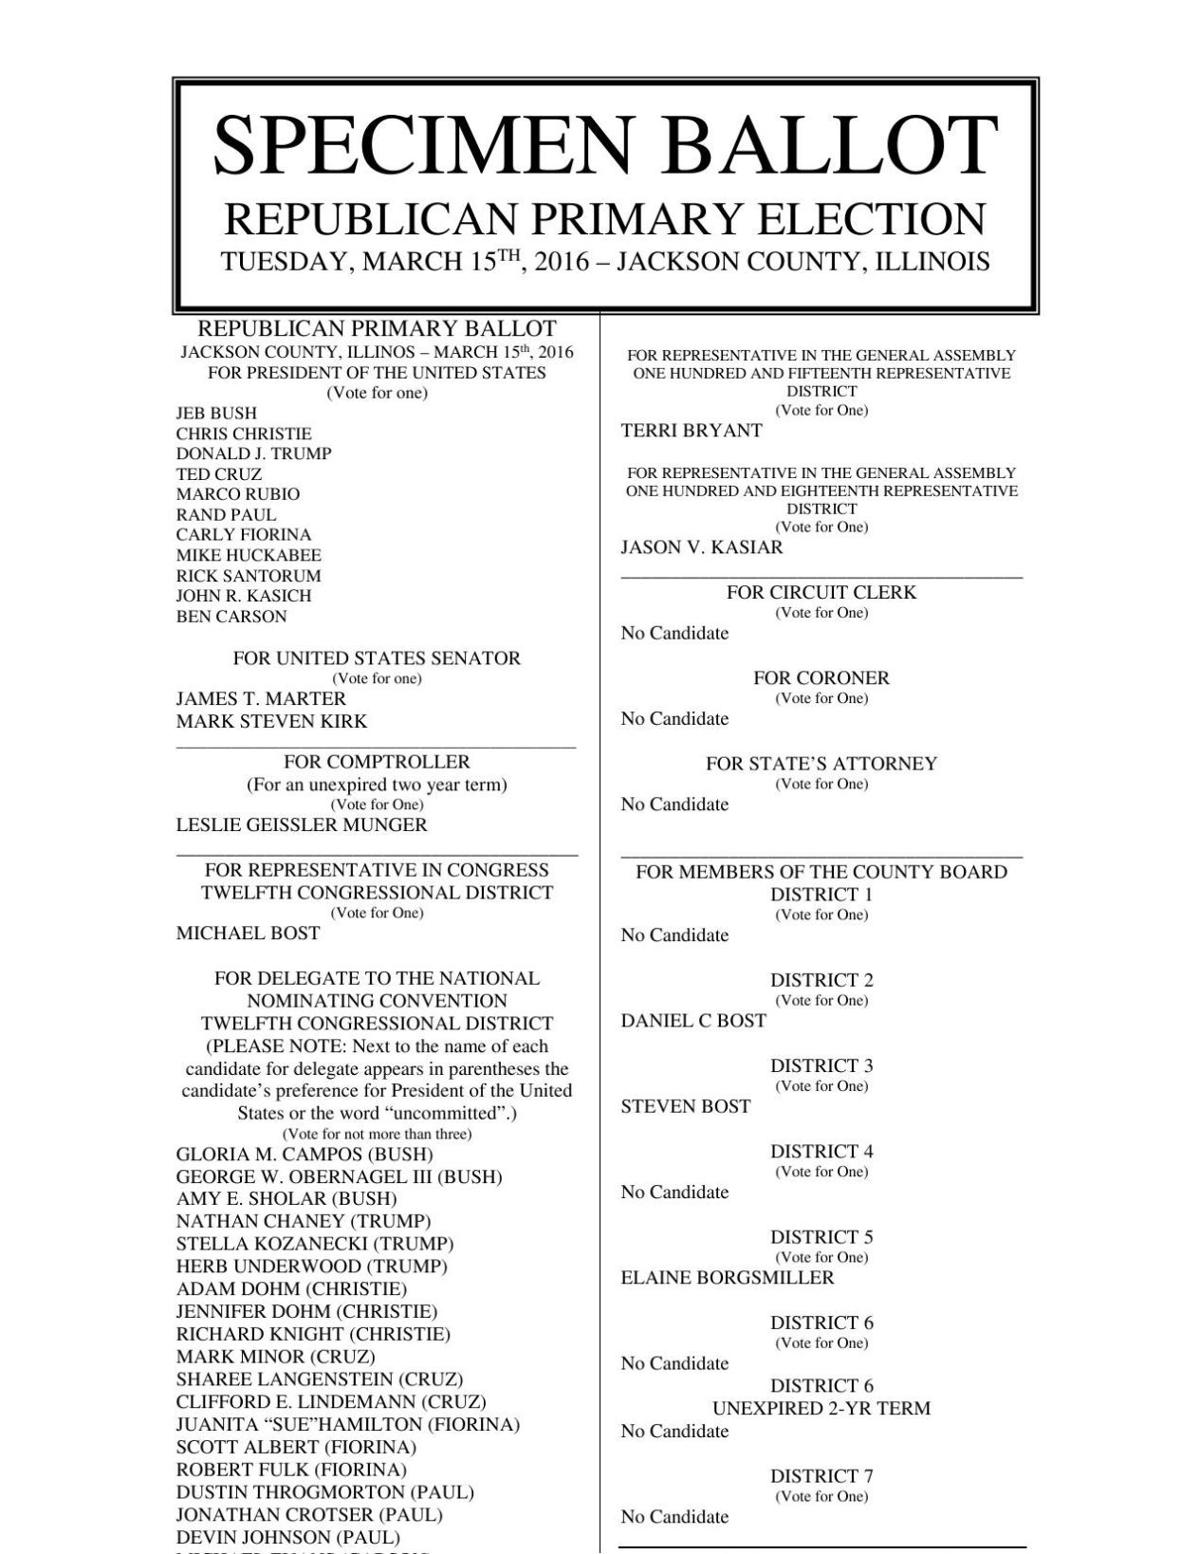 jackson-county-republican-primary-ballot